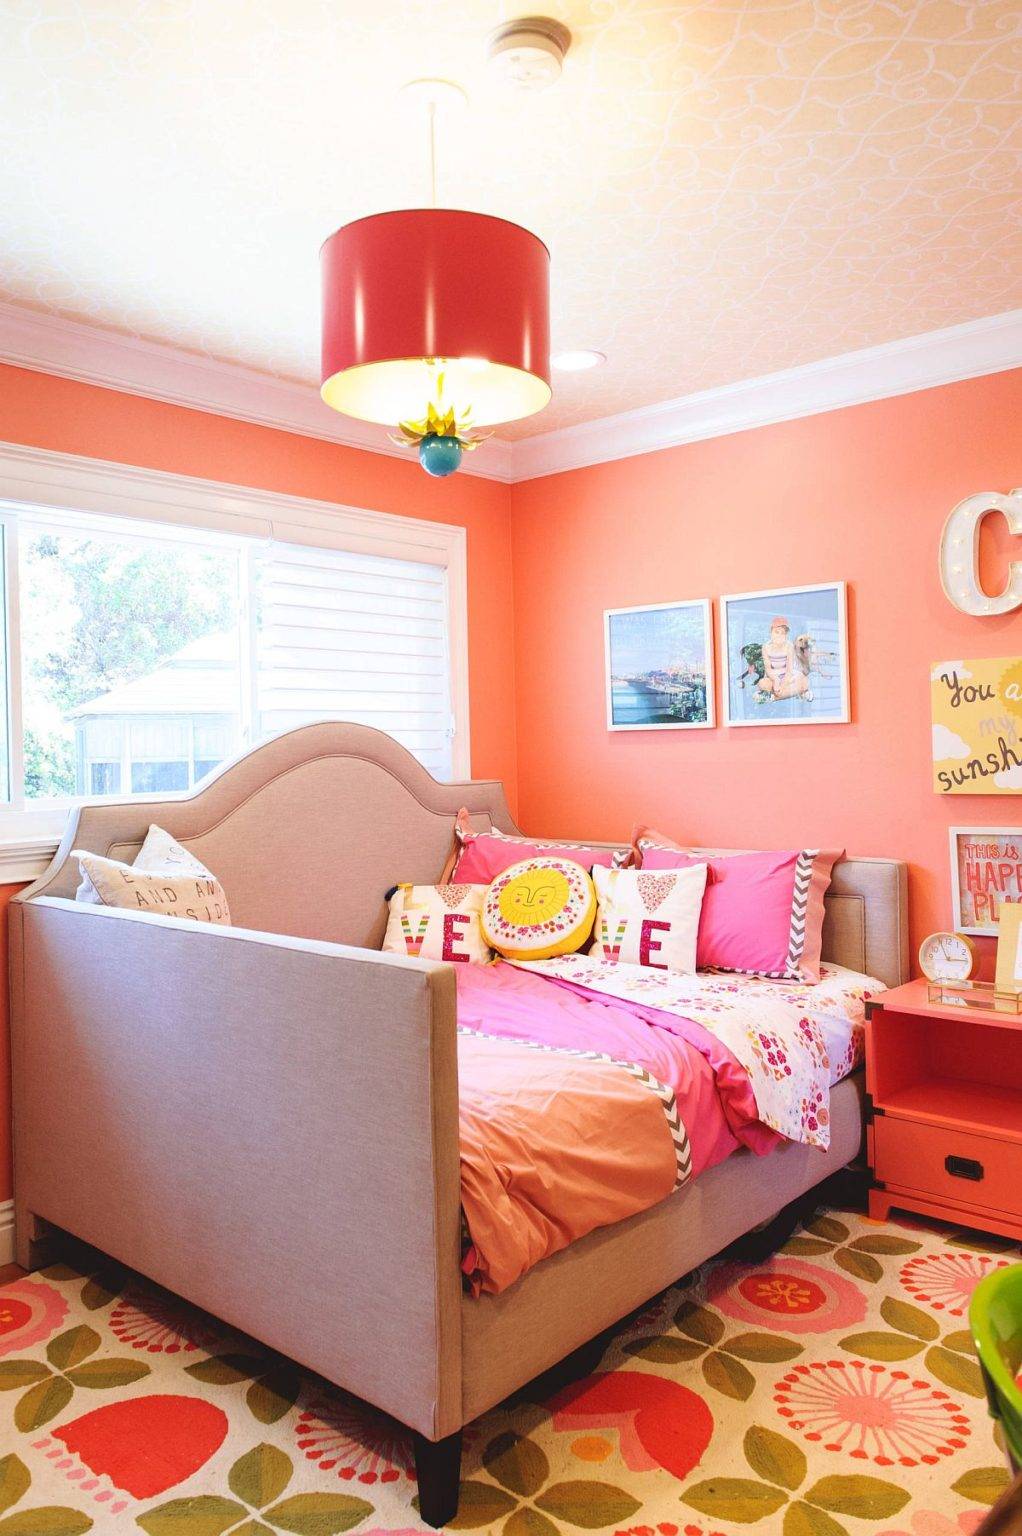 Phông nền màu cam quyến rũ trong phòng trẻ em với trần decor giấy dán tường và đèn mặt dây thông minh cỡ lớn.